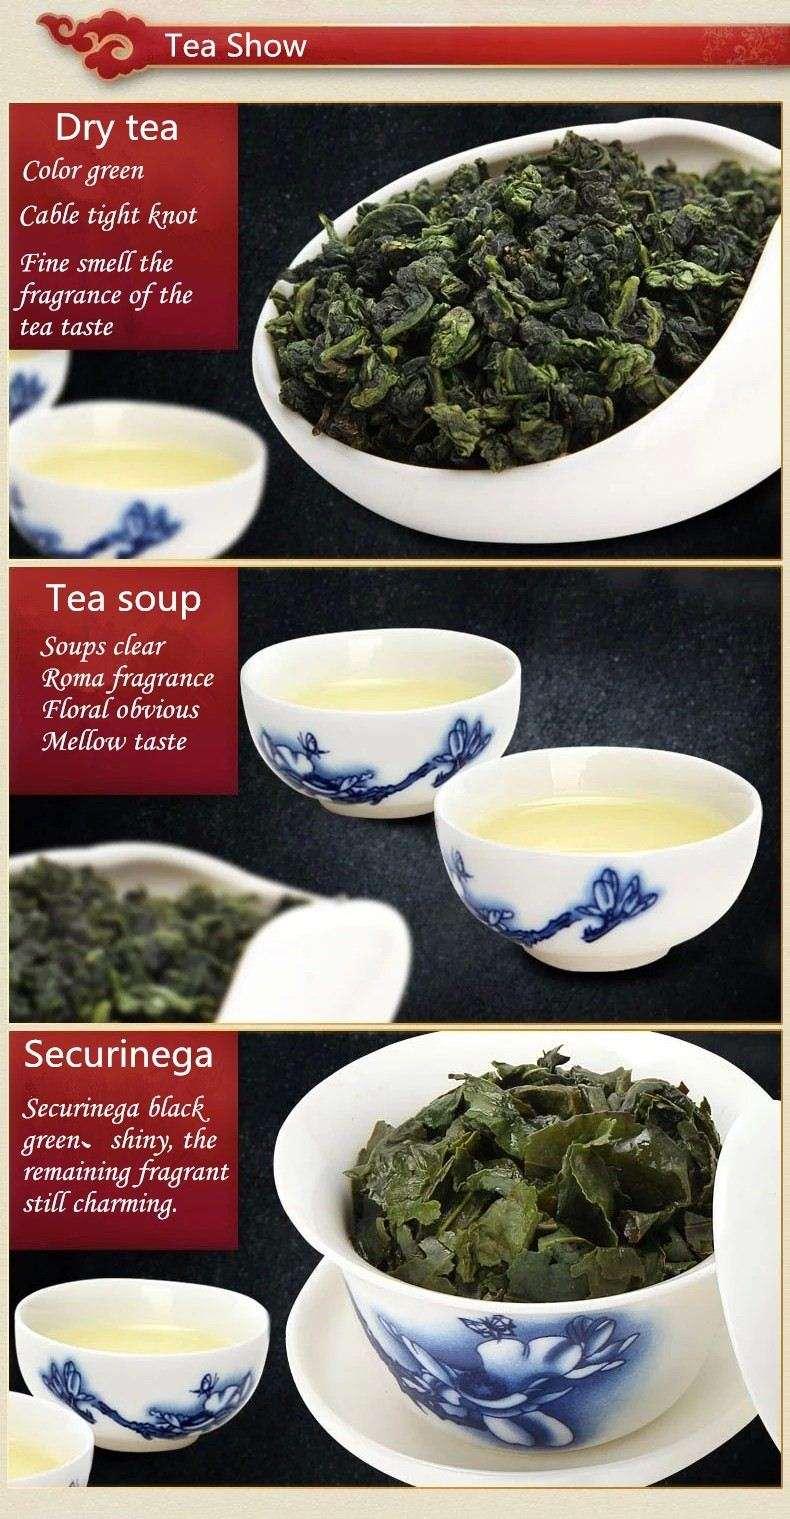 HelloYoung10 bags Iron Cans Gift Packing TiKuanYin Green Tea Tie Guan Yin Tea ANXI Oolong Tea